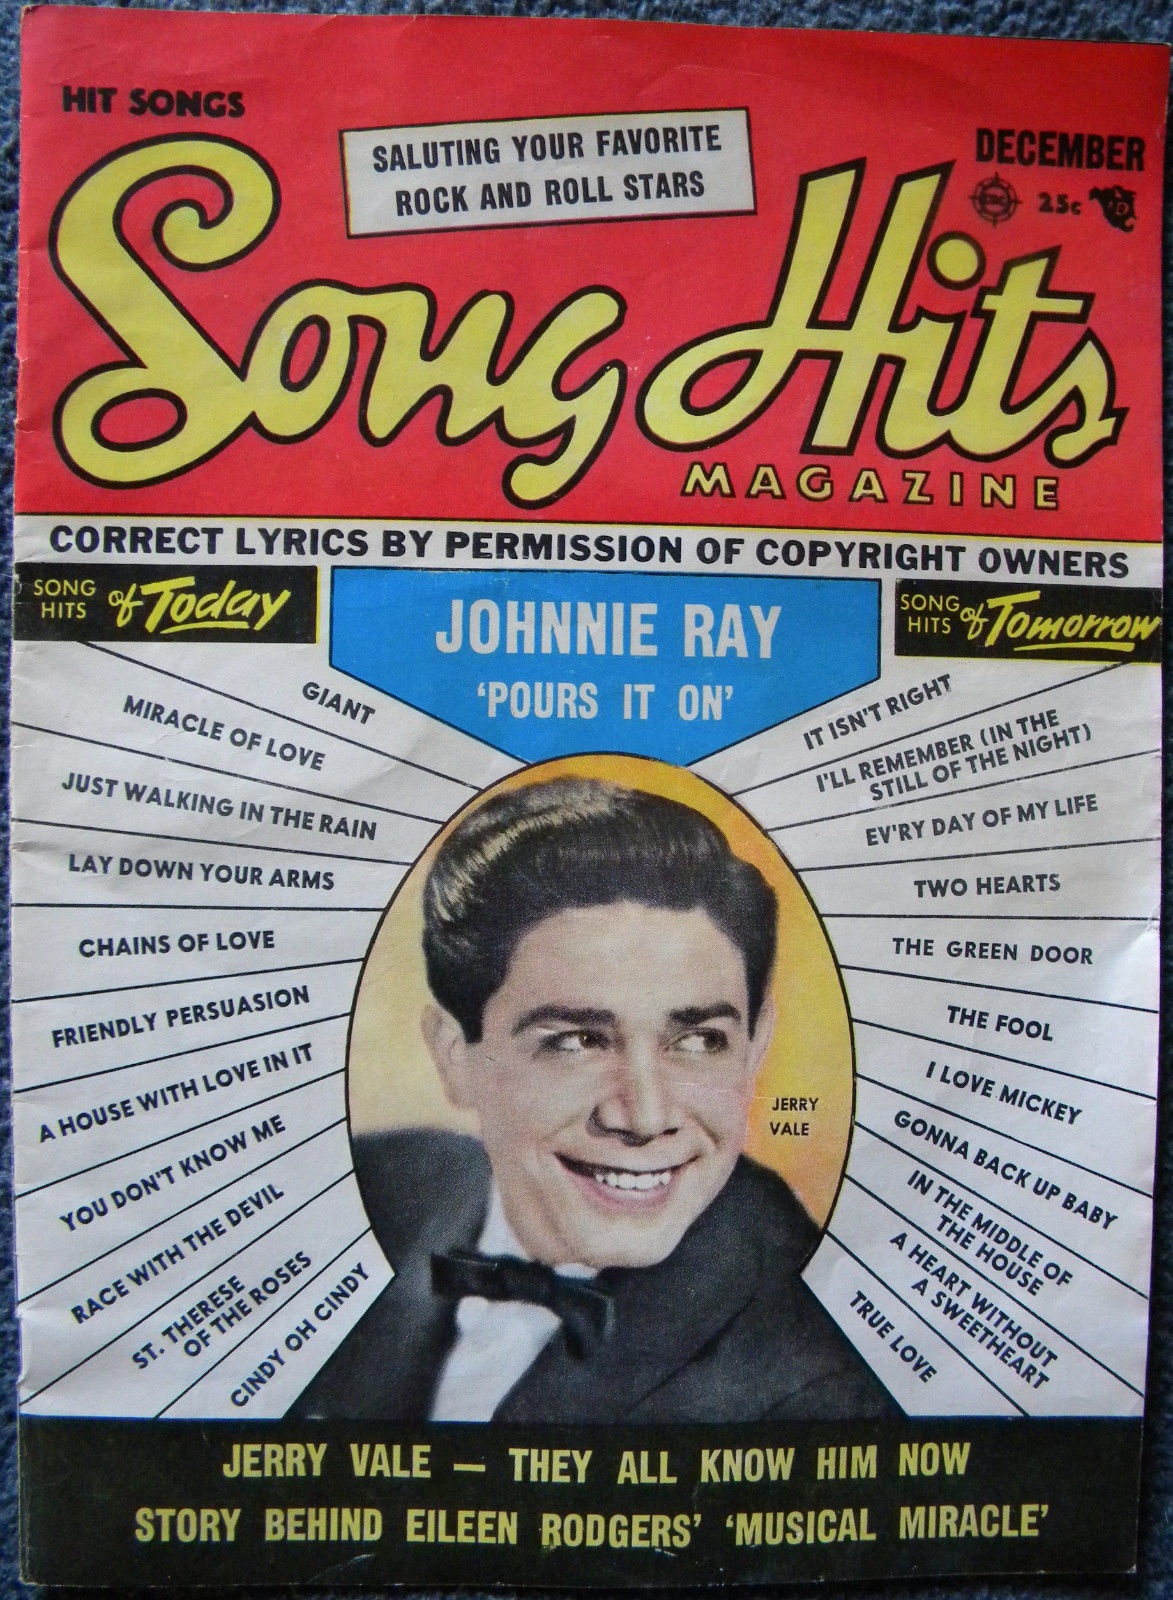 1956 song hits